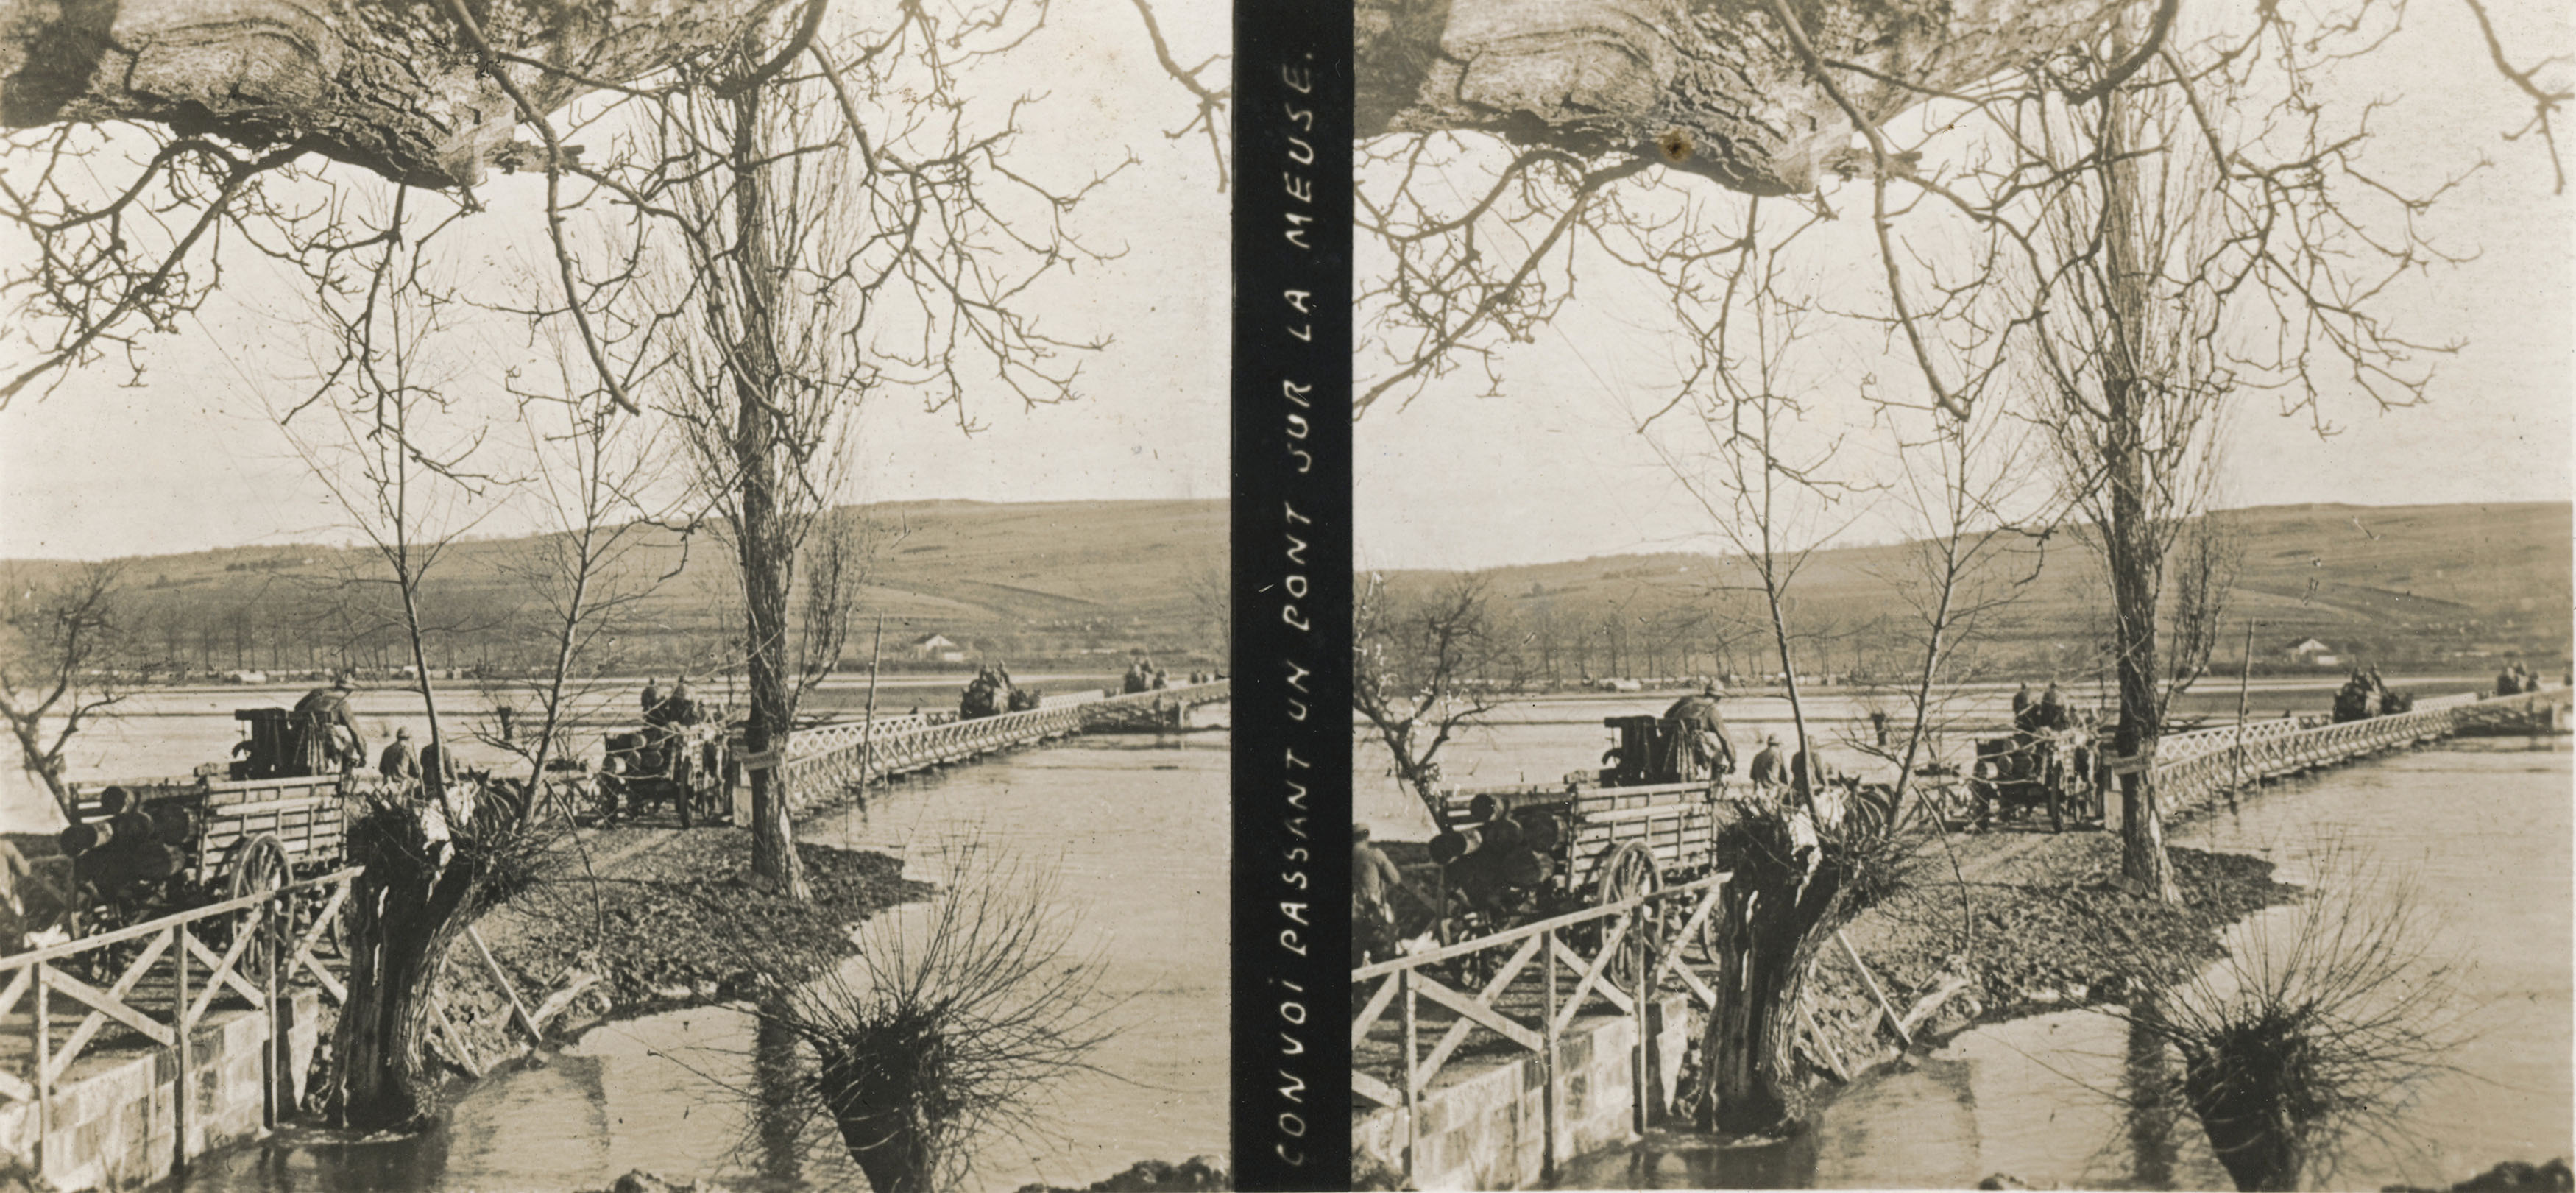 convoi passant un pont sur la Meuse - convoy crossing a bridge over the Meuse